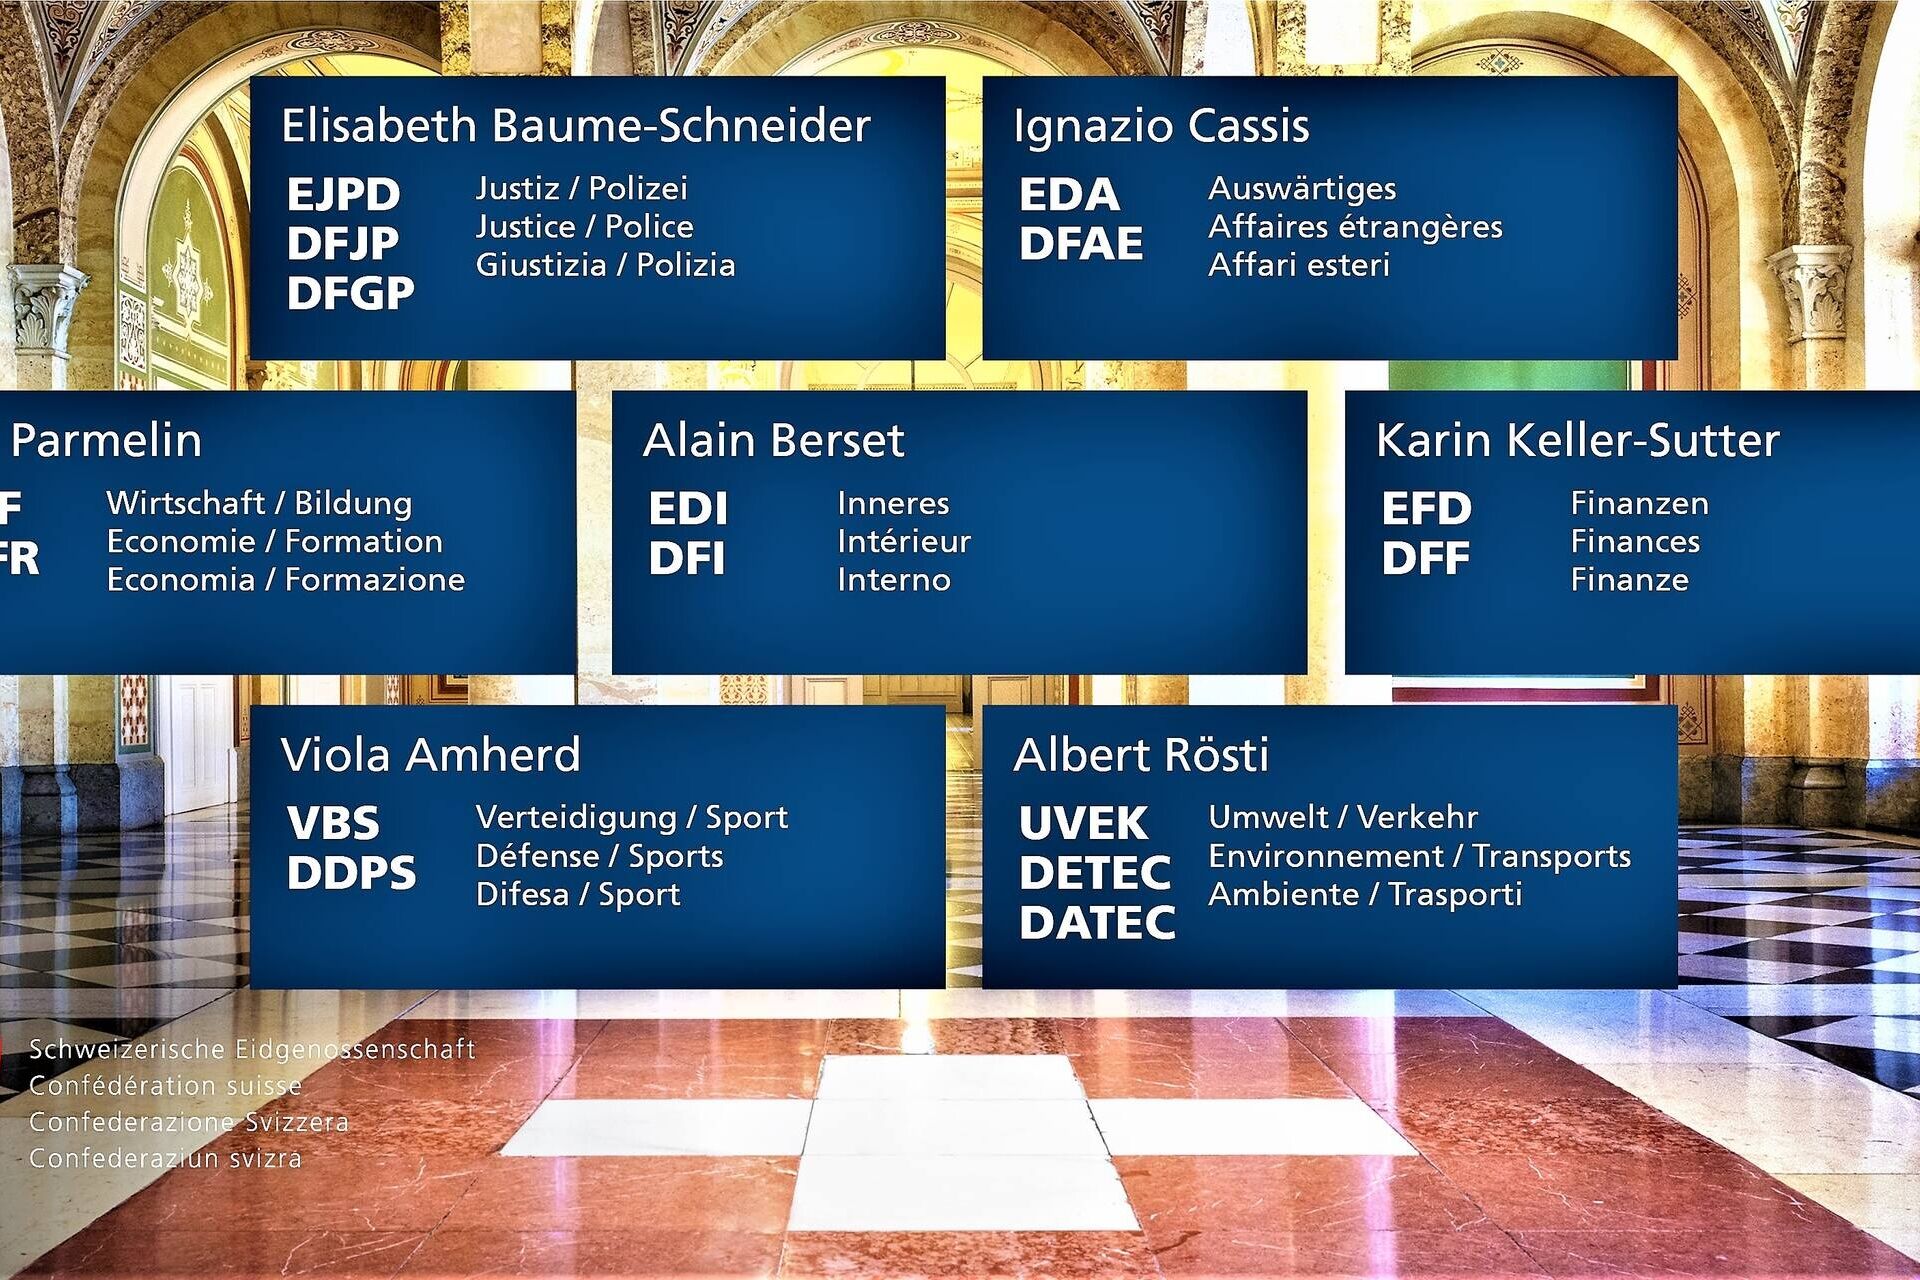 Ομοσπονδιακό Συμβούλιο: η σύνθεση του Ομοσπονδιακού Συμβουλίου της Ελβετικής Συνομοσπονδίας το 2023 με ένδειξη των ονομάτων και των ρόλων των Ομοσπονδιακών Συμβούλων